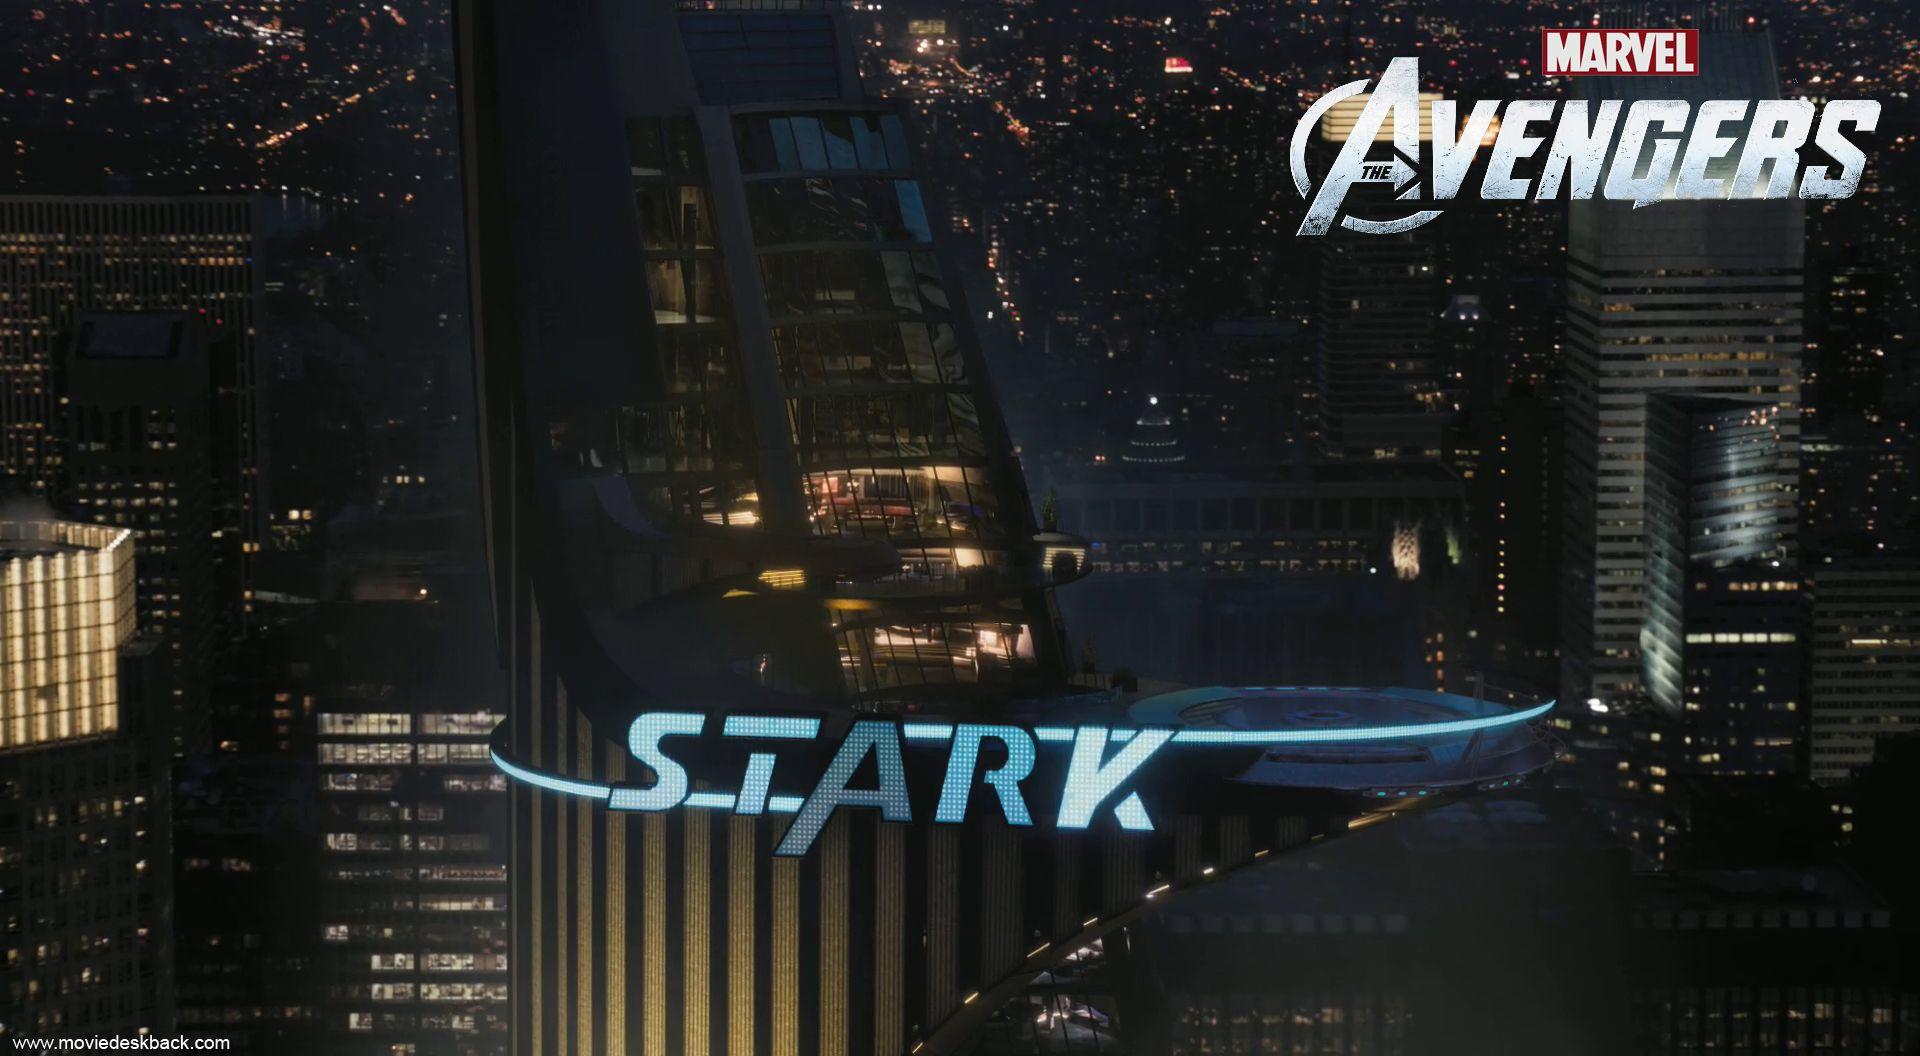 The Avengers (2012) Stark Building